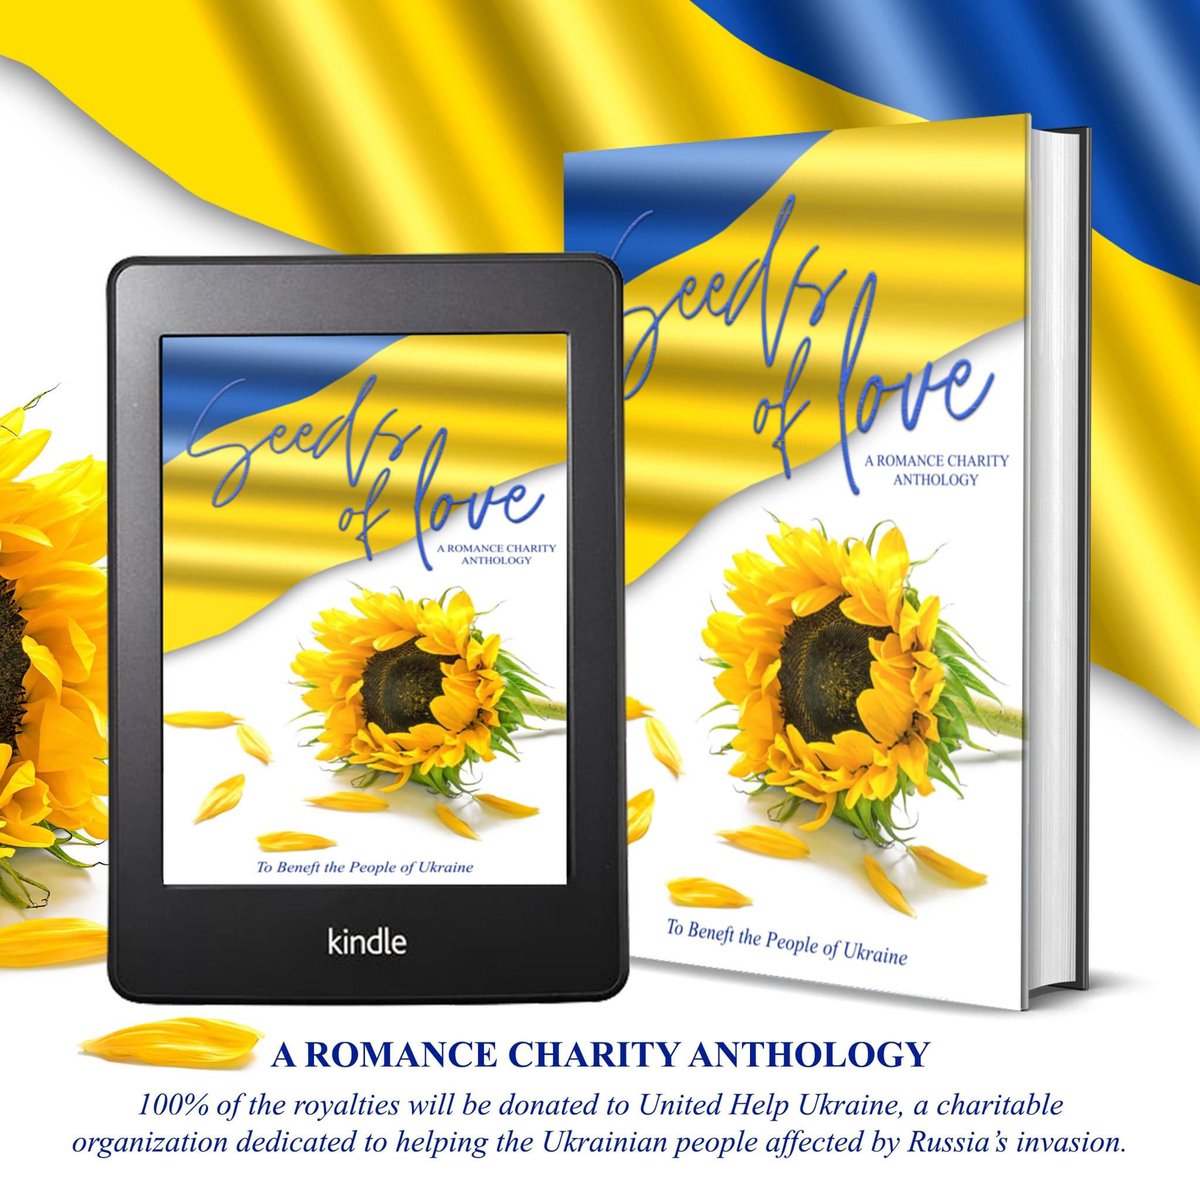 🌻ღ 𓂩 ღ🇺🇦
🇺🇦 COVER REVEAL & PRE-ORDER ALERT! 🇺🇦

ONE-CLICK HERE: geni.us/SeedsOfLove

#RomanceAnthology #Ukraine #SeedsOfLoveAnthology  #CharityAnthology #StandWithUkraine #SupportUkraine #RomanceReaders #OneClick #Donate #Charity #MakeADifference 
@HerCountryGirl
@AnnLuv79